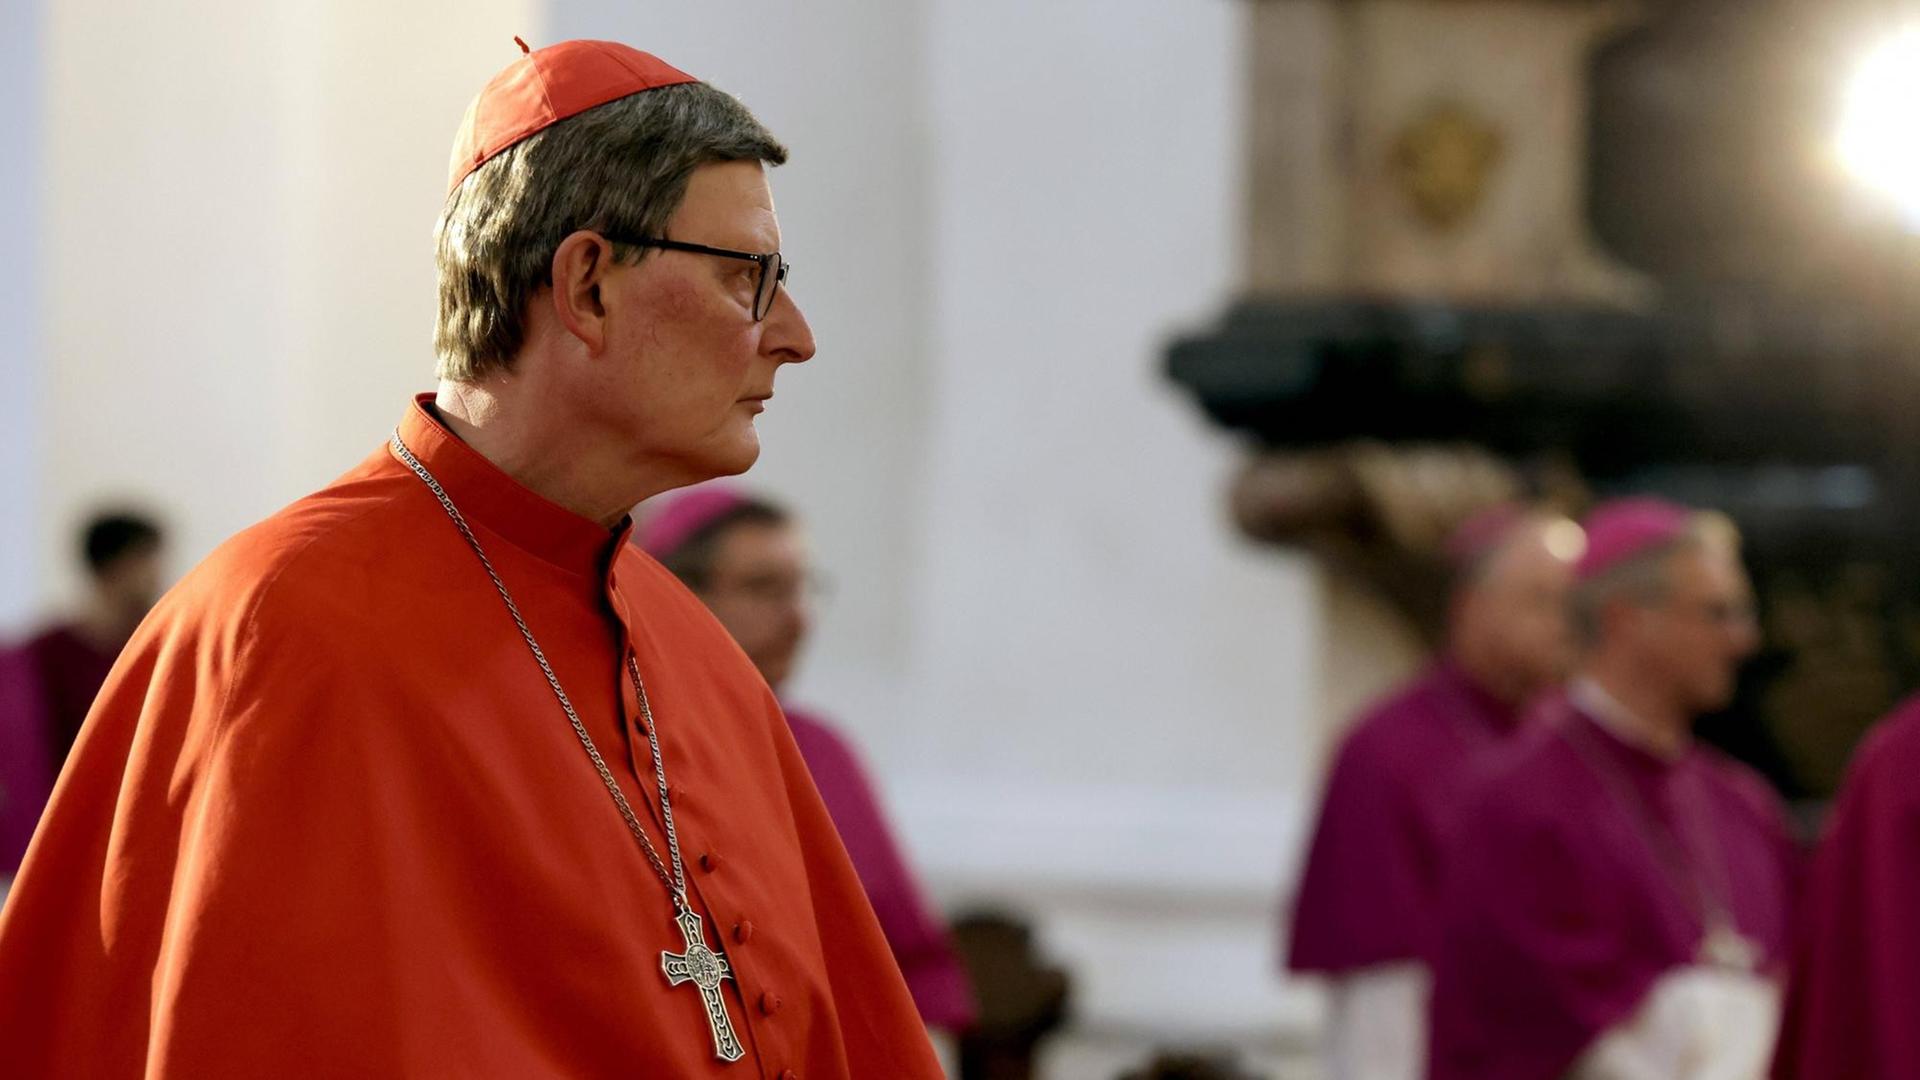 Kardinal Rainer Maria Woelki sitzt in einem roten Gewand in einem Raum und guckt traurig.